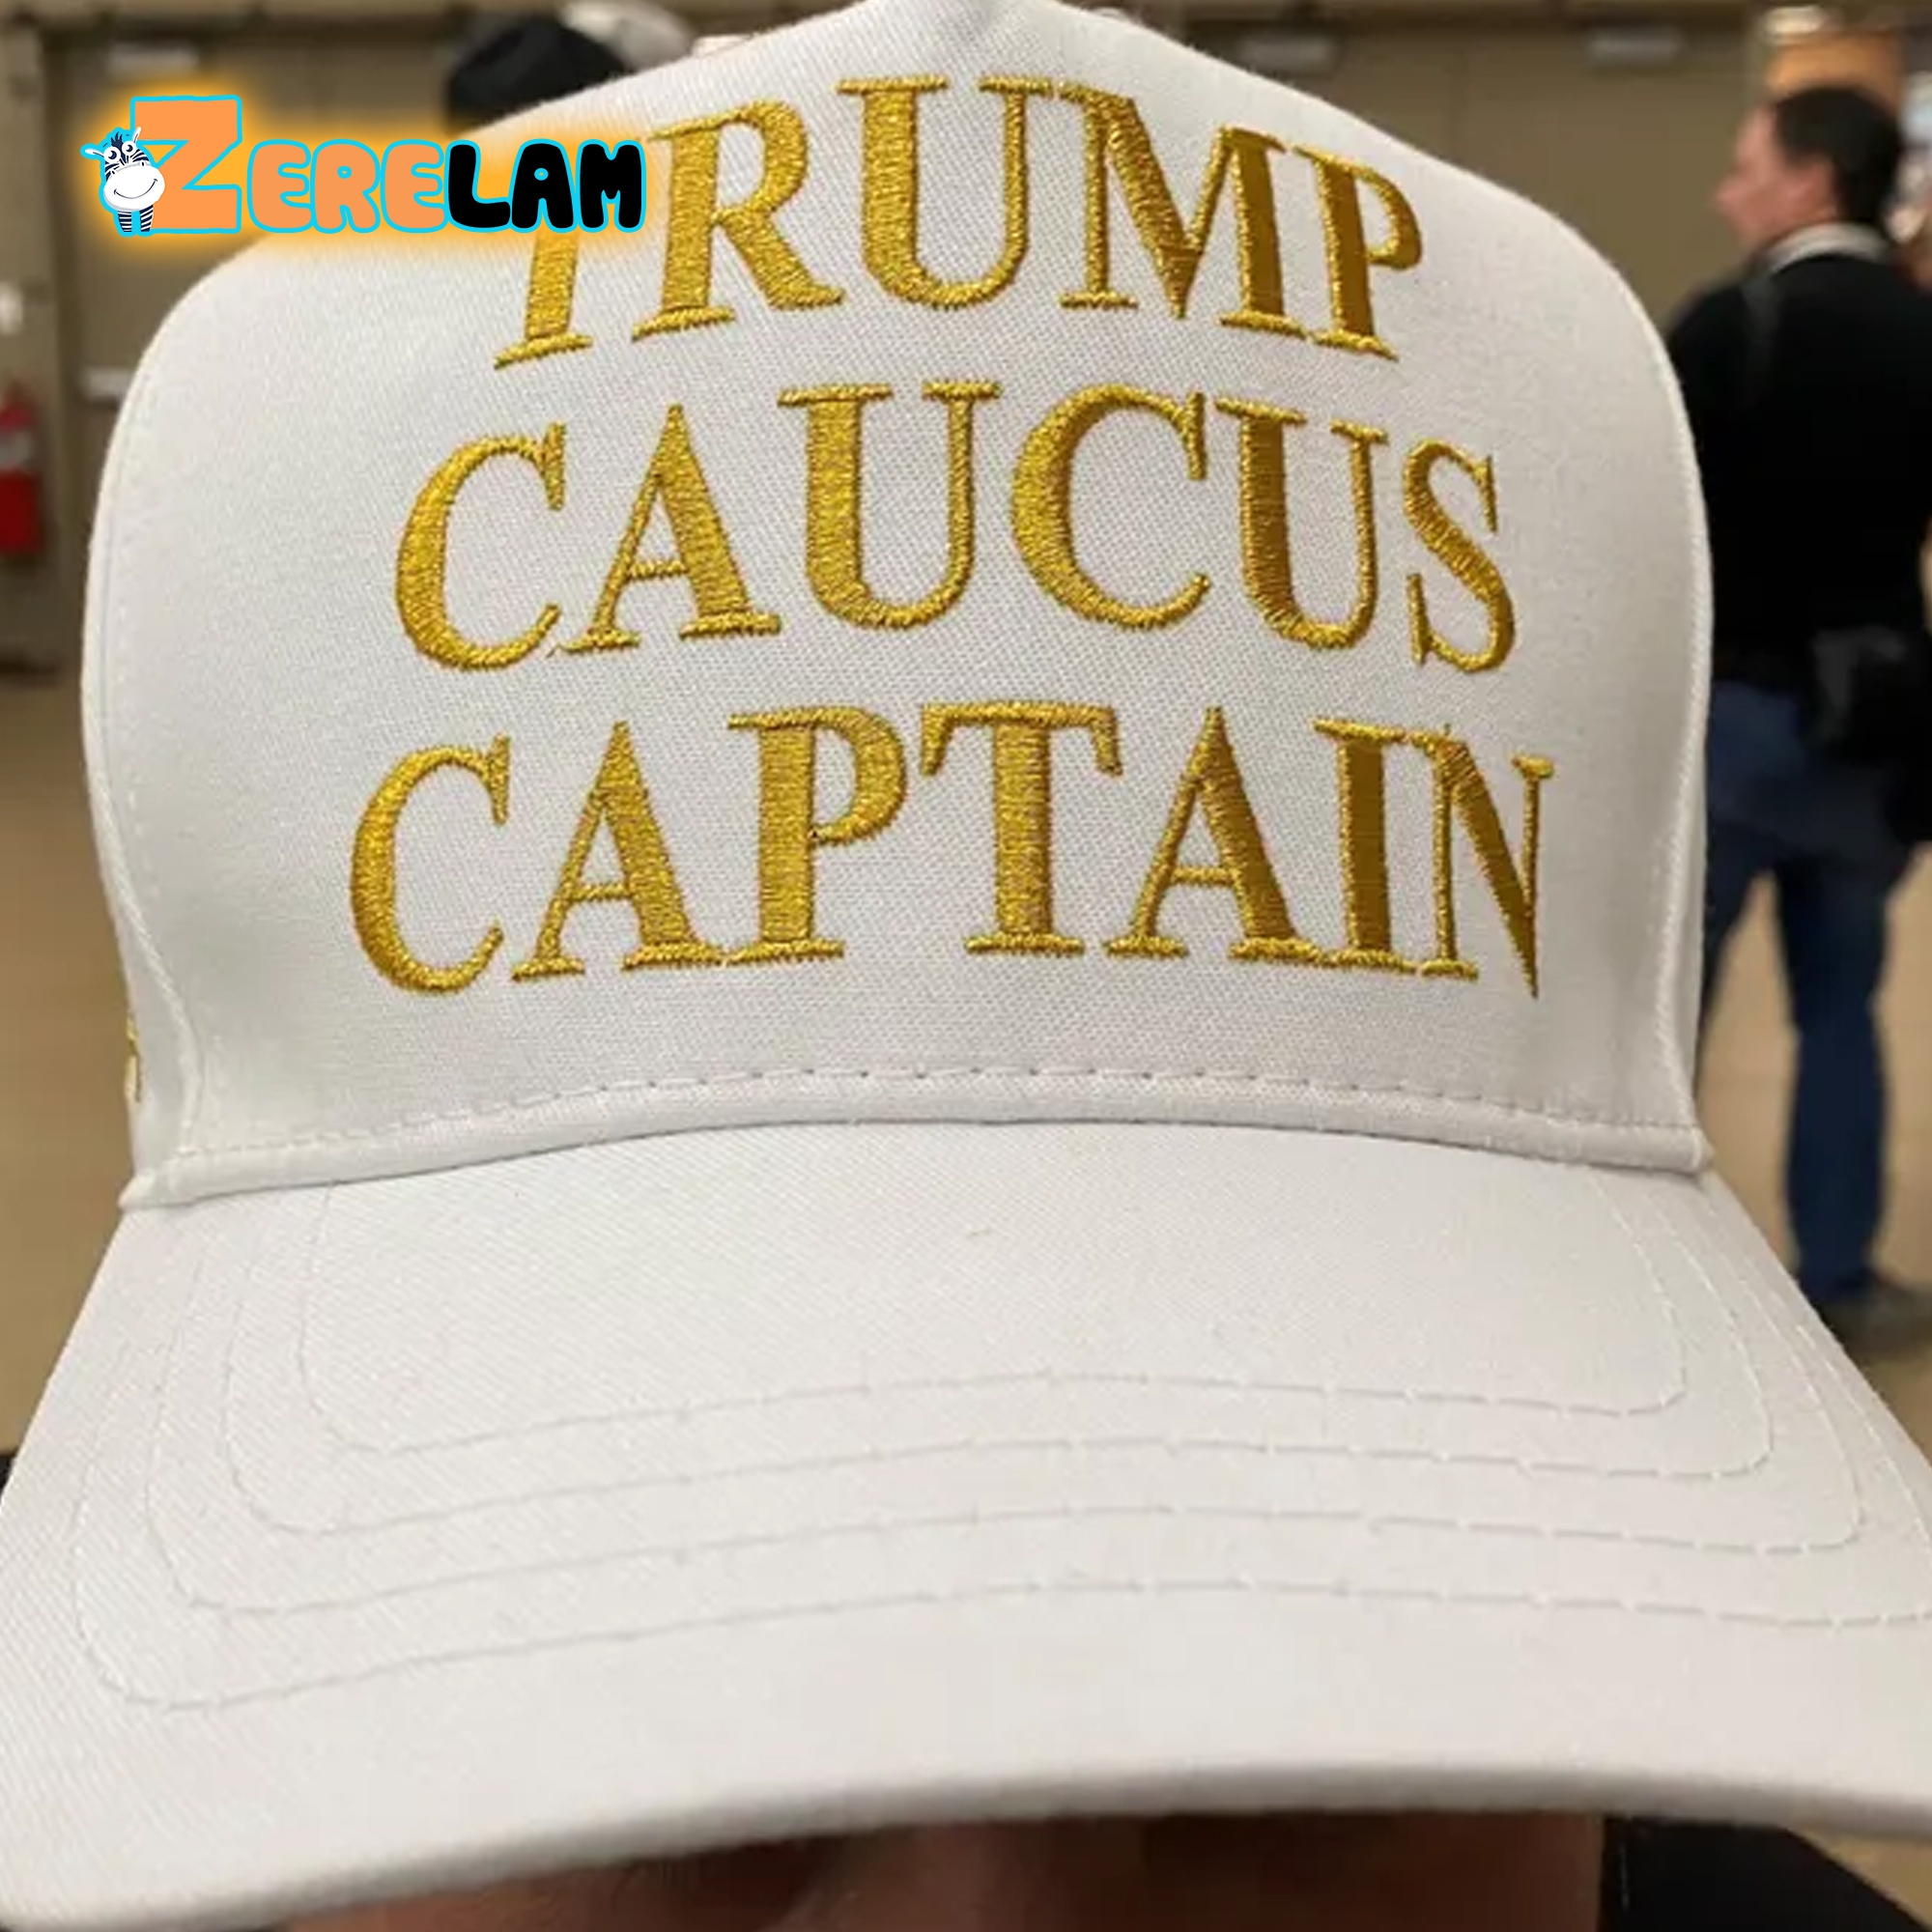 Trump Caucus Captain Hat 1